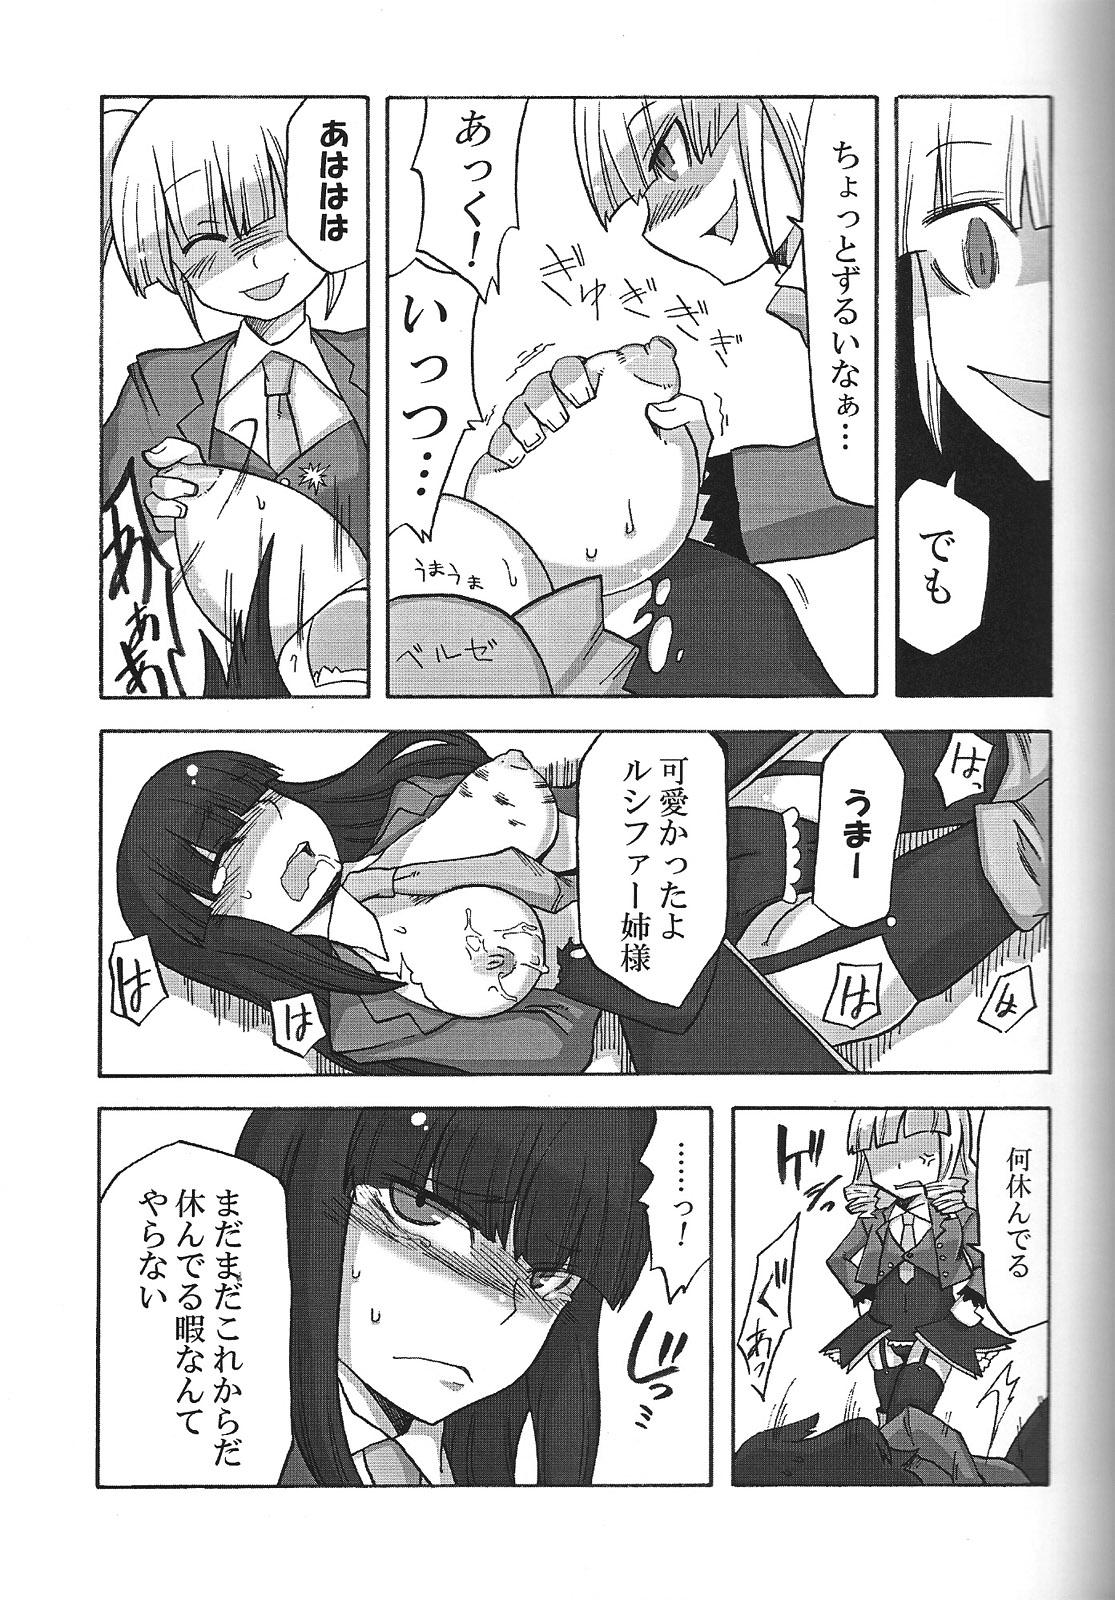 Sexo Nakayoshi 7 Shimai - Umineko no naku koro ni Toying - Page 10